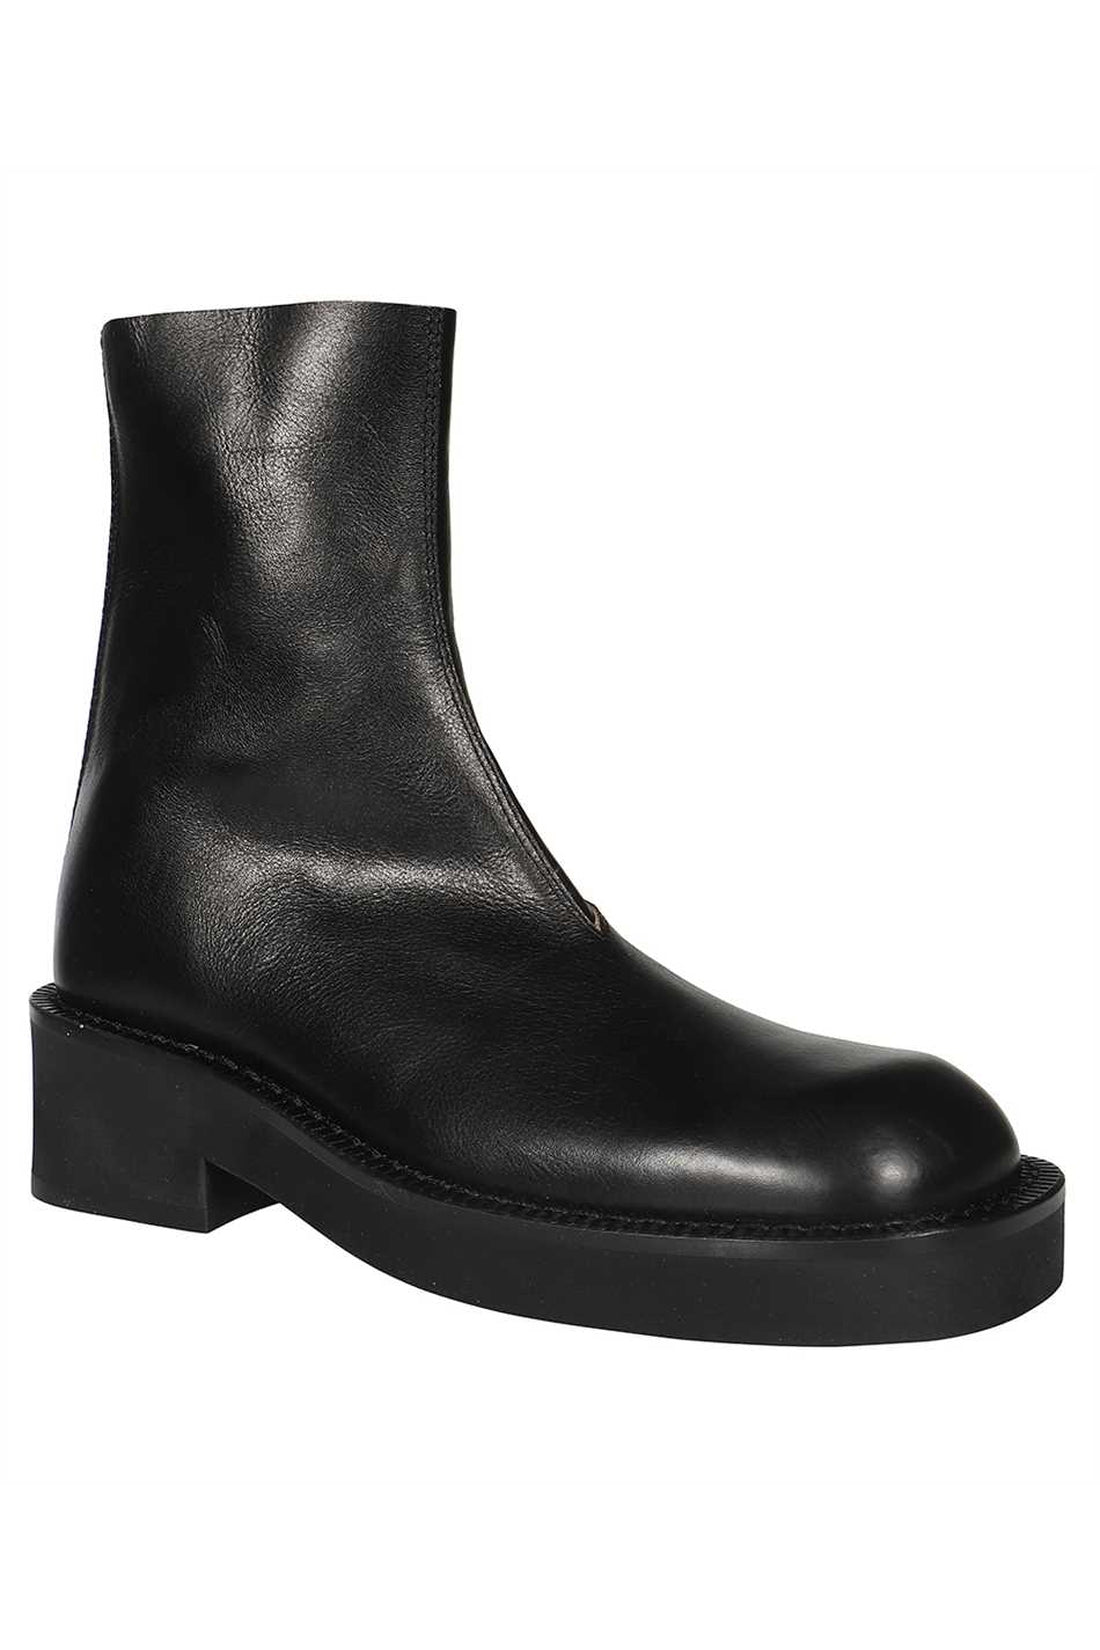 MM6 Maison Margiela-OUTLET-SALE-Leather ankle boots-ARCHIVIST